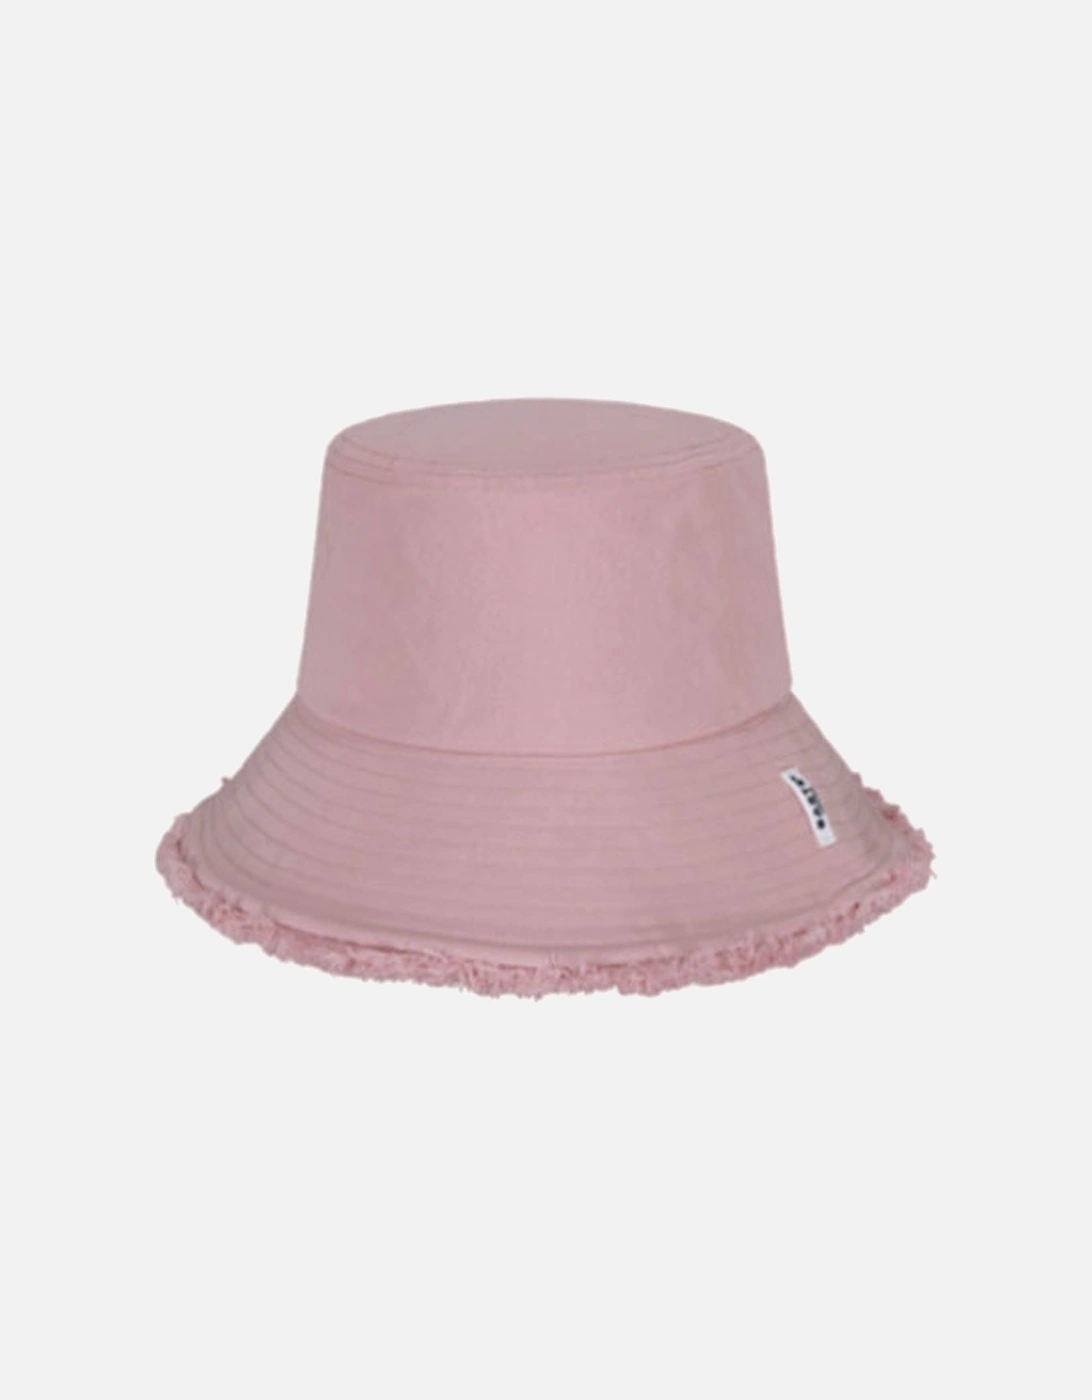 Huahina Hat Pink, 4 of 3